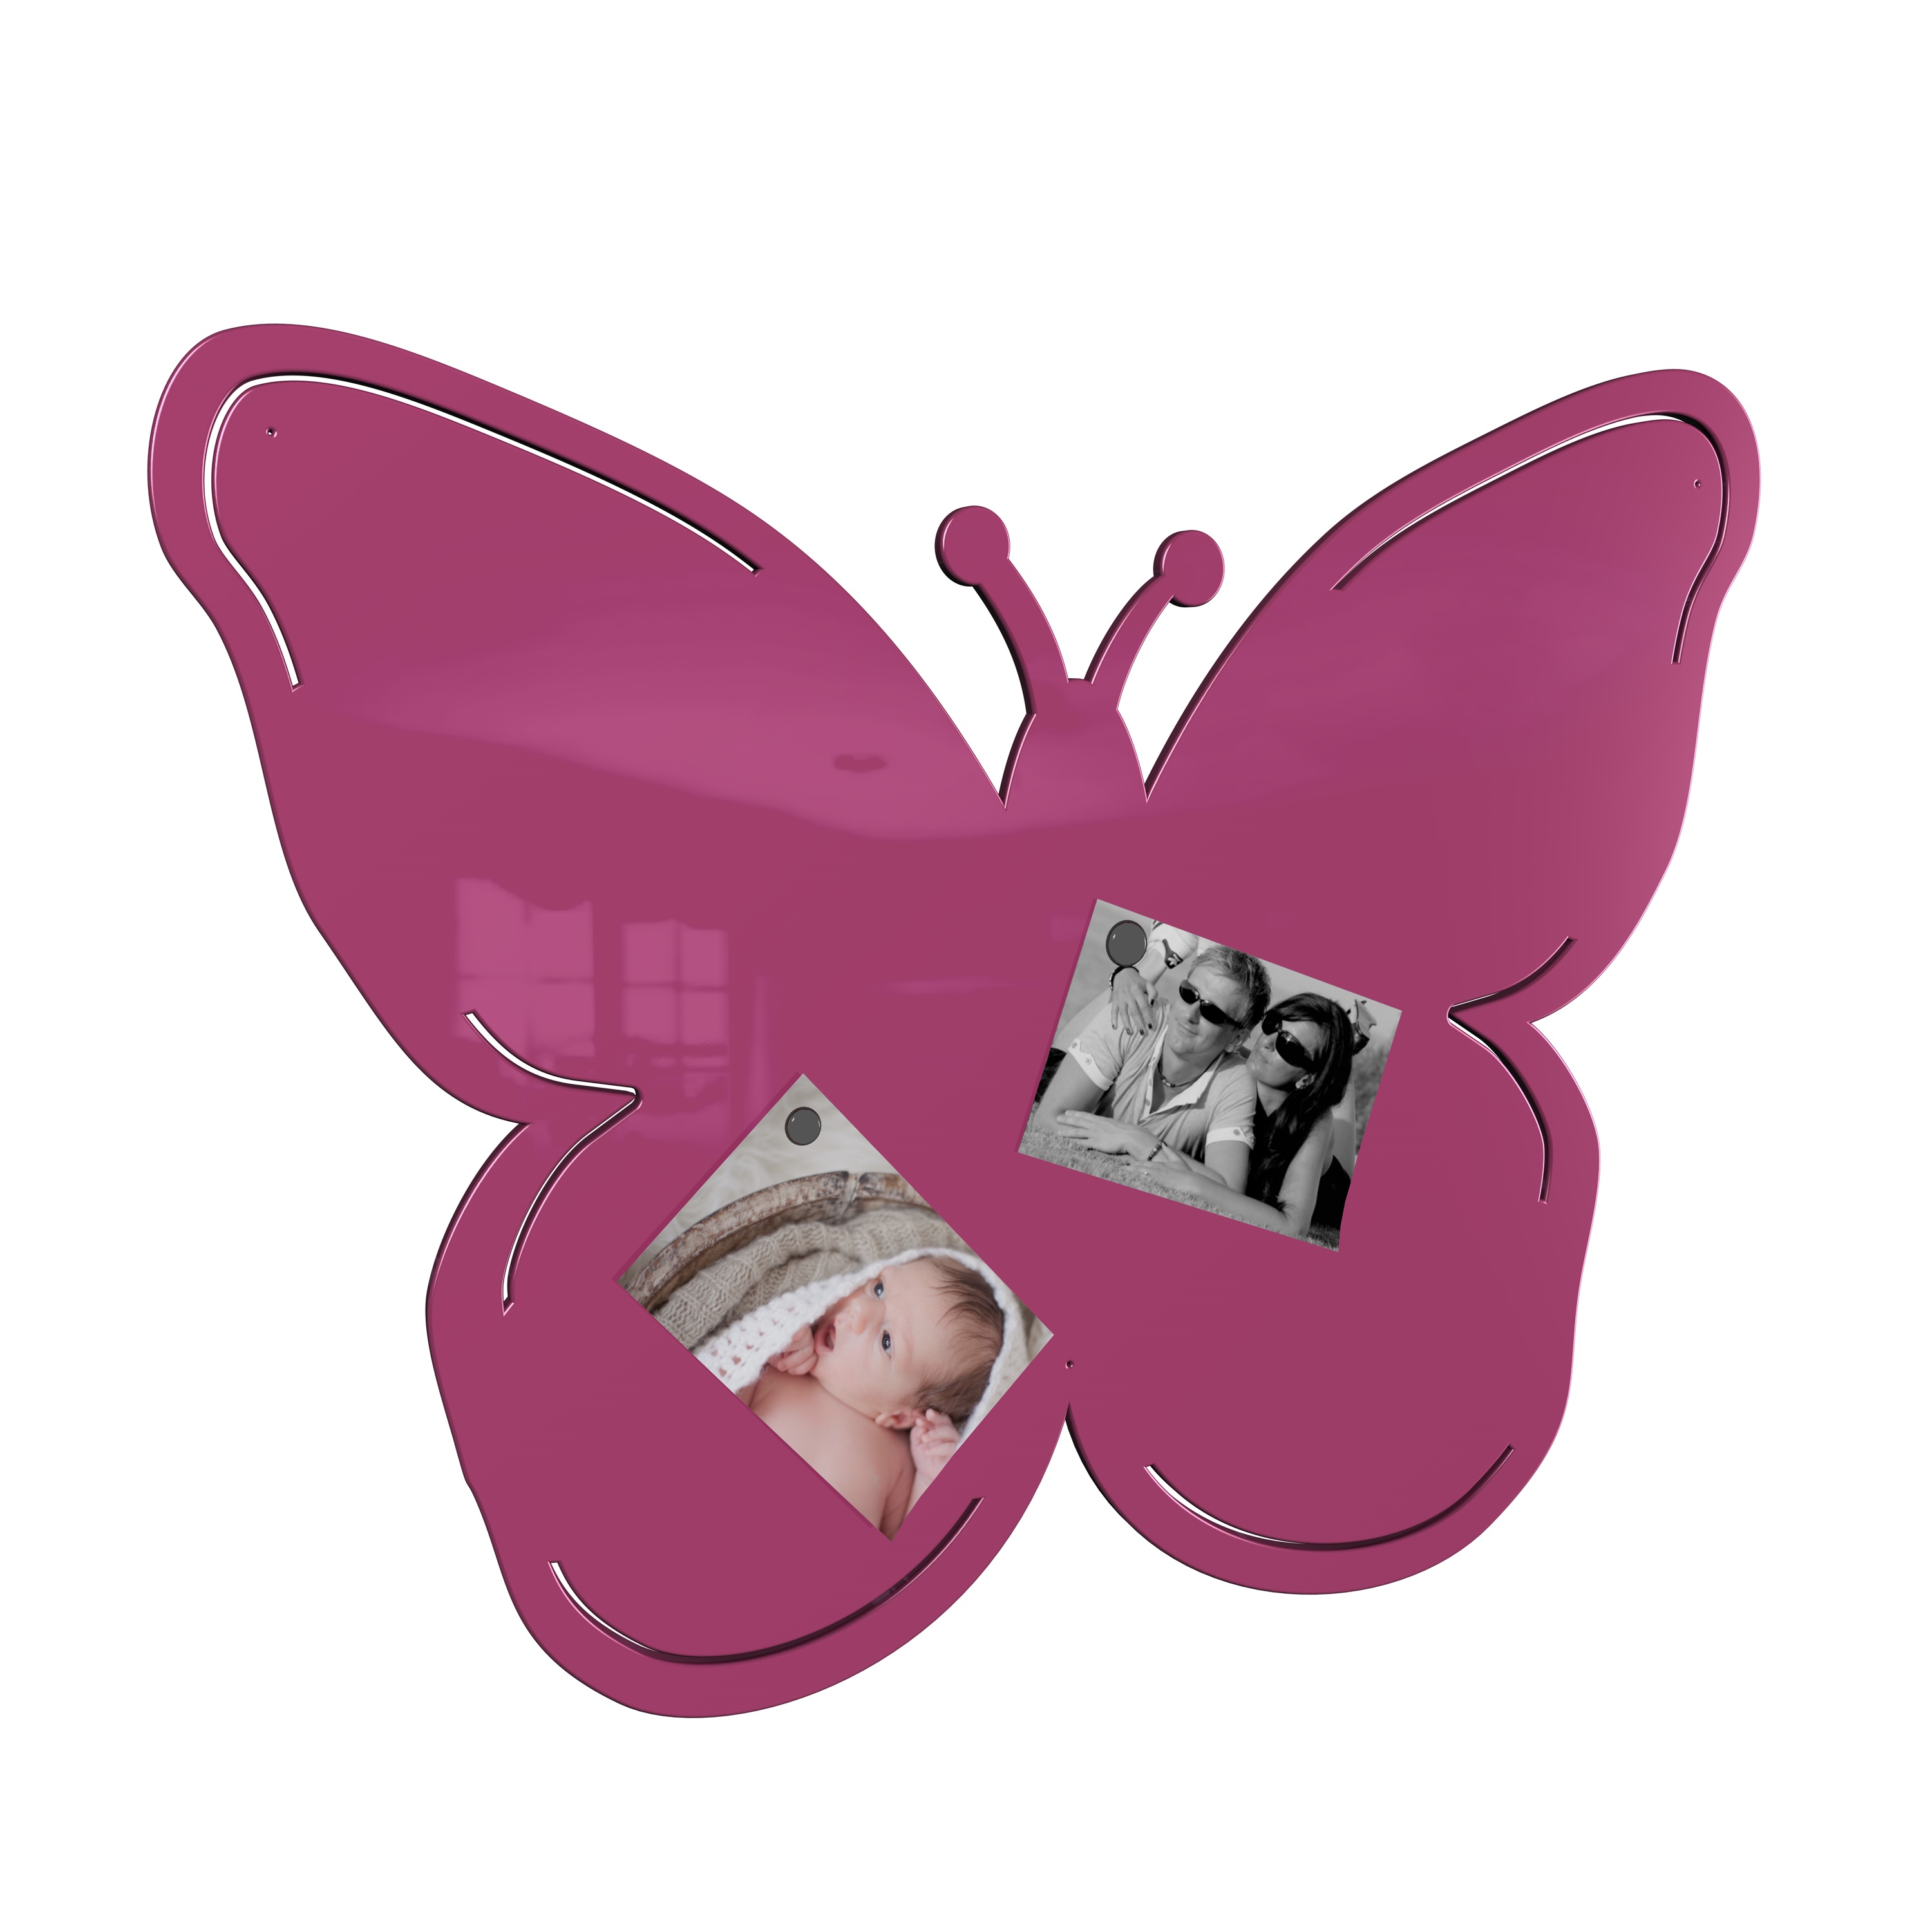 Magnetwand Magnettafel Memoboard - Schmetterling - RAL 4010 telemagenta pink rosa